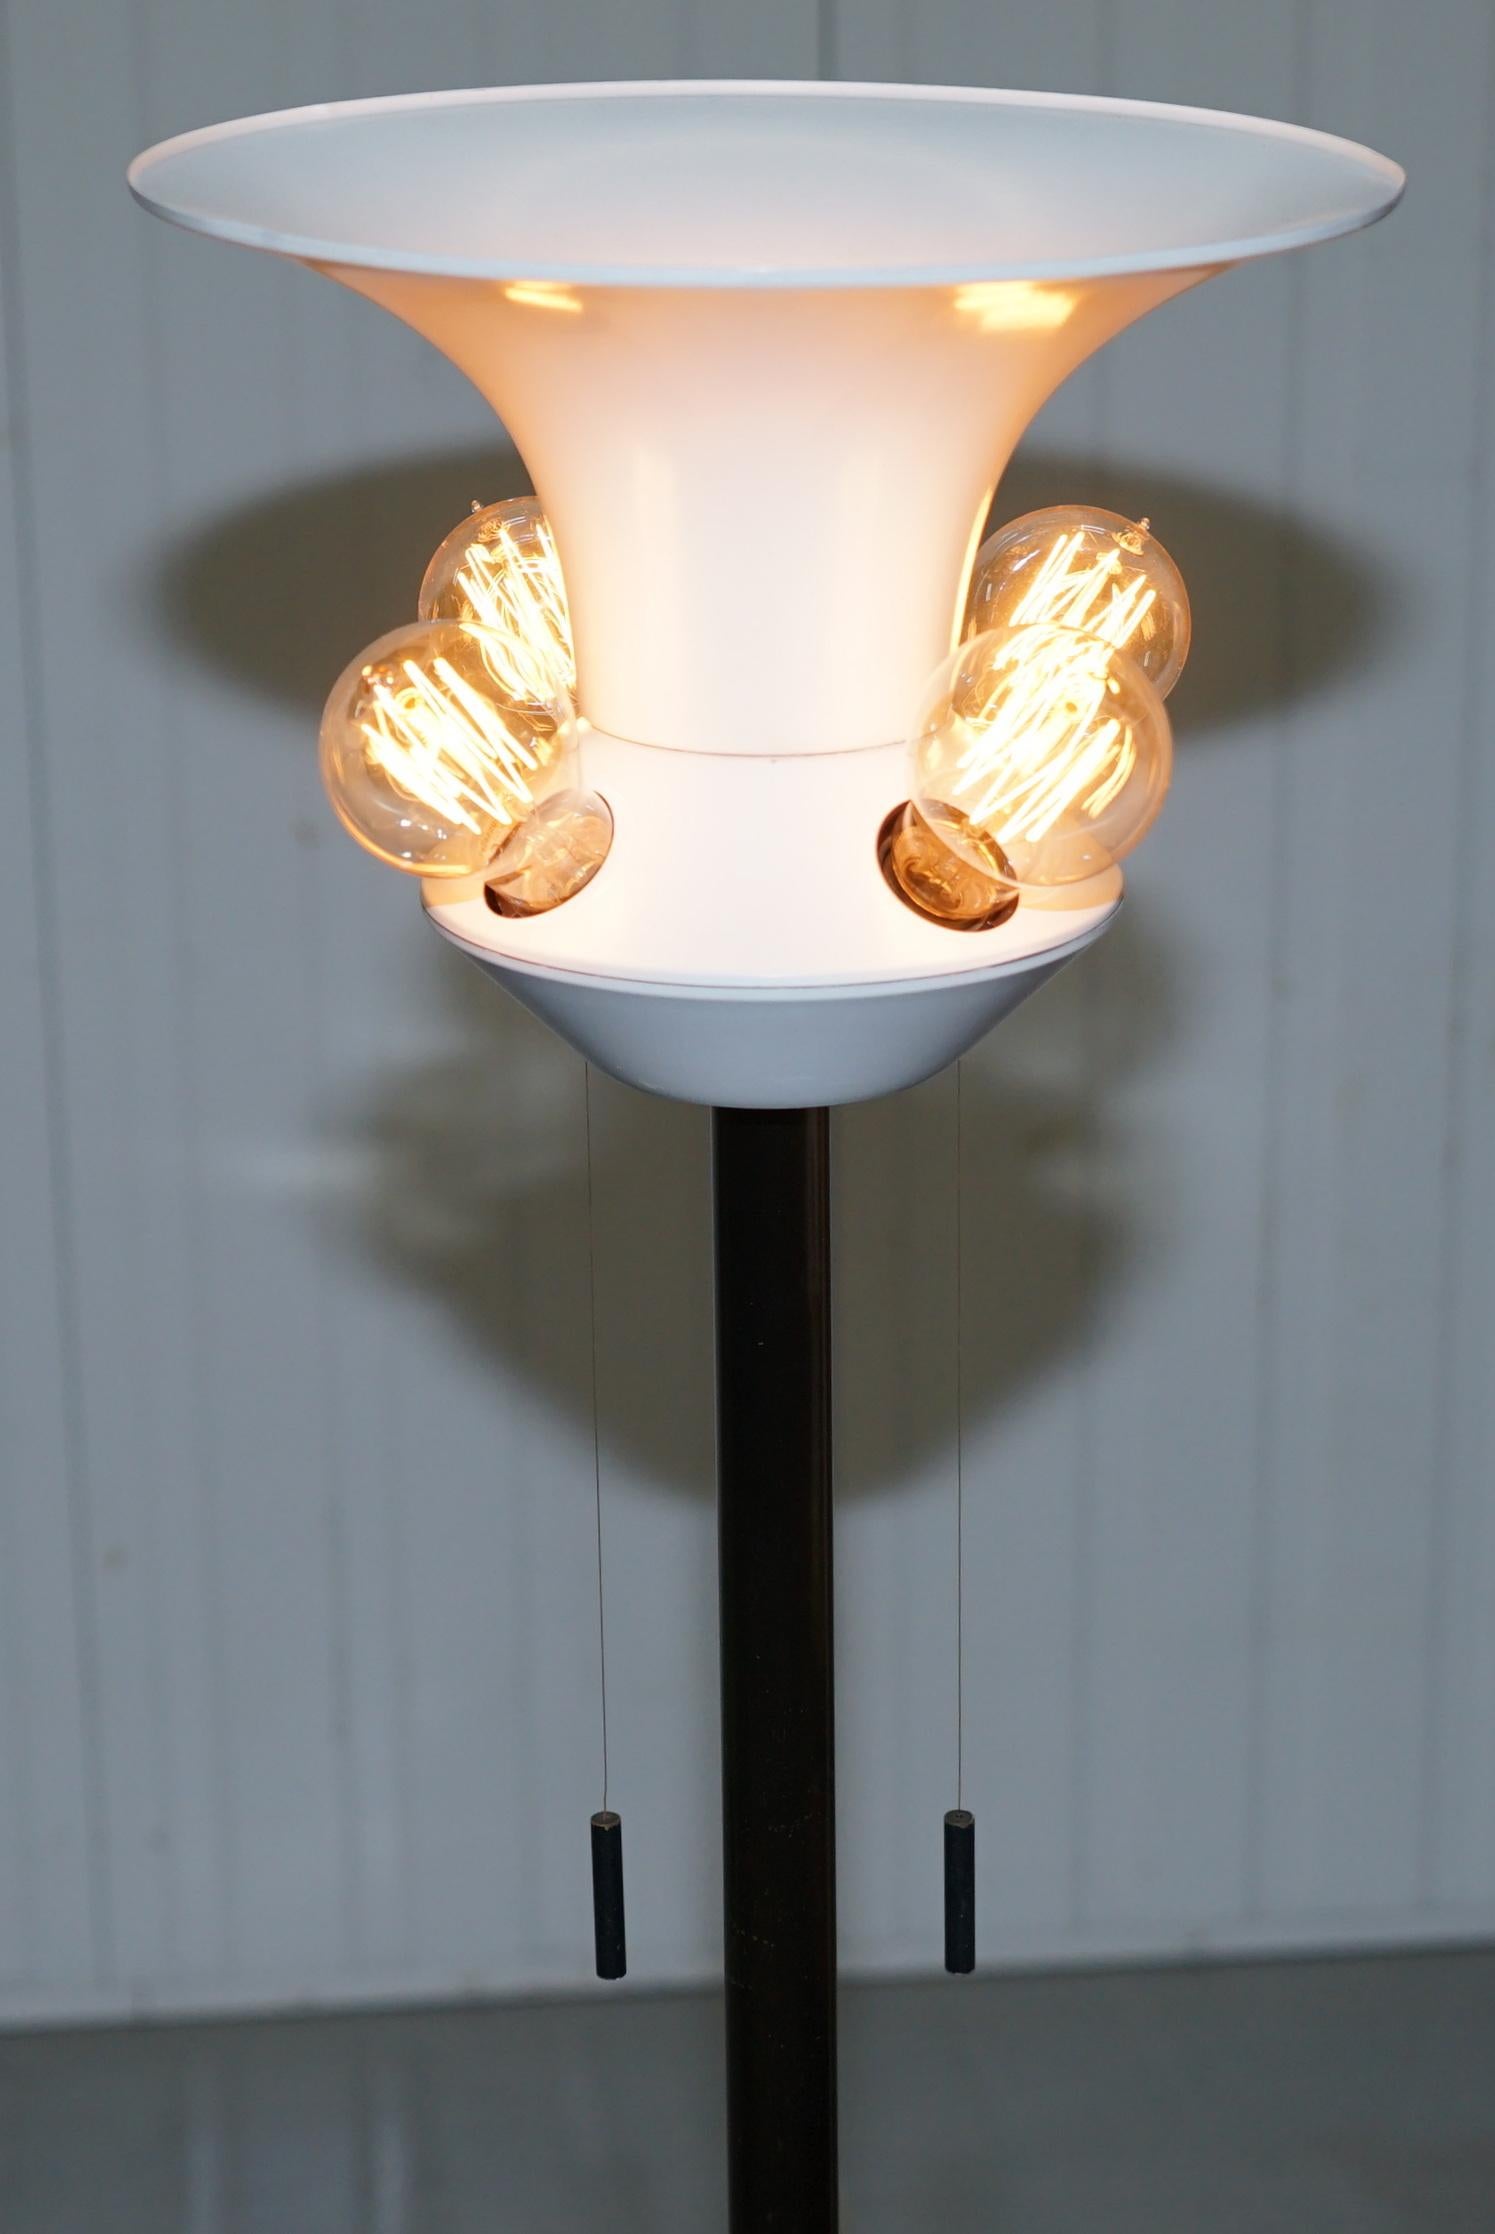 Nous sommes ravis d'offrir à la vente cette lampe sur pied Art Moderne des années 1960

Il s'agit d'une lampe bien froide, il y a quatre lumières à l'extérieur et une à l'intérieur, il y a deux cordons lumineux, tirez le premier cordon et deux des